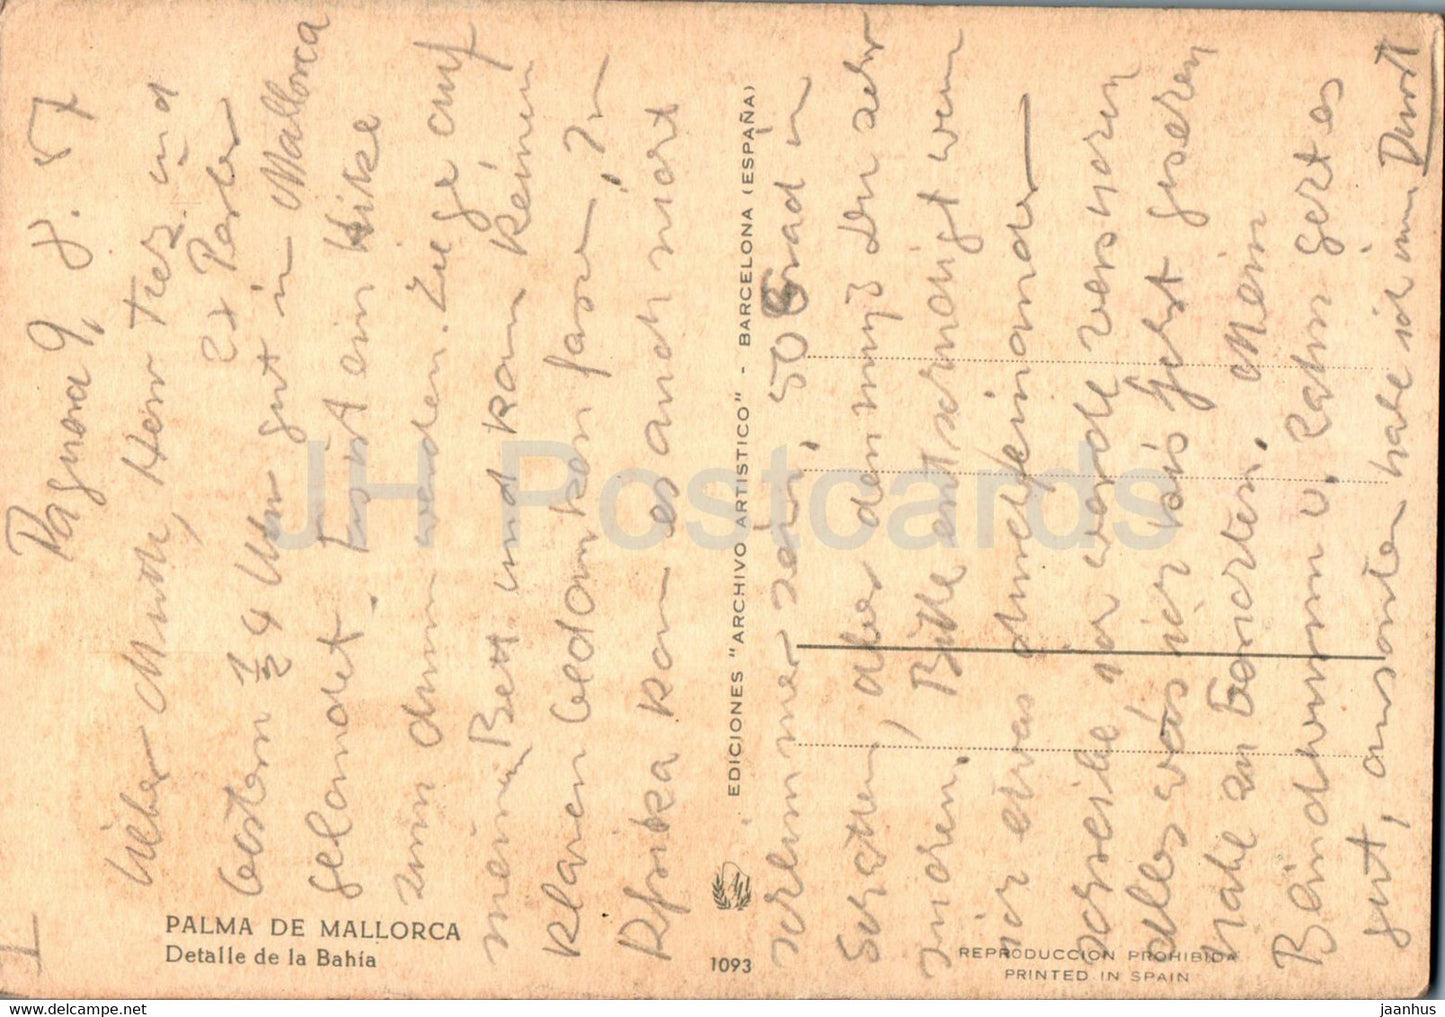 Palma de Mallorca - Detalle de la Bahia - boat - old postcard - 1093 - Spain - unused